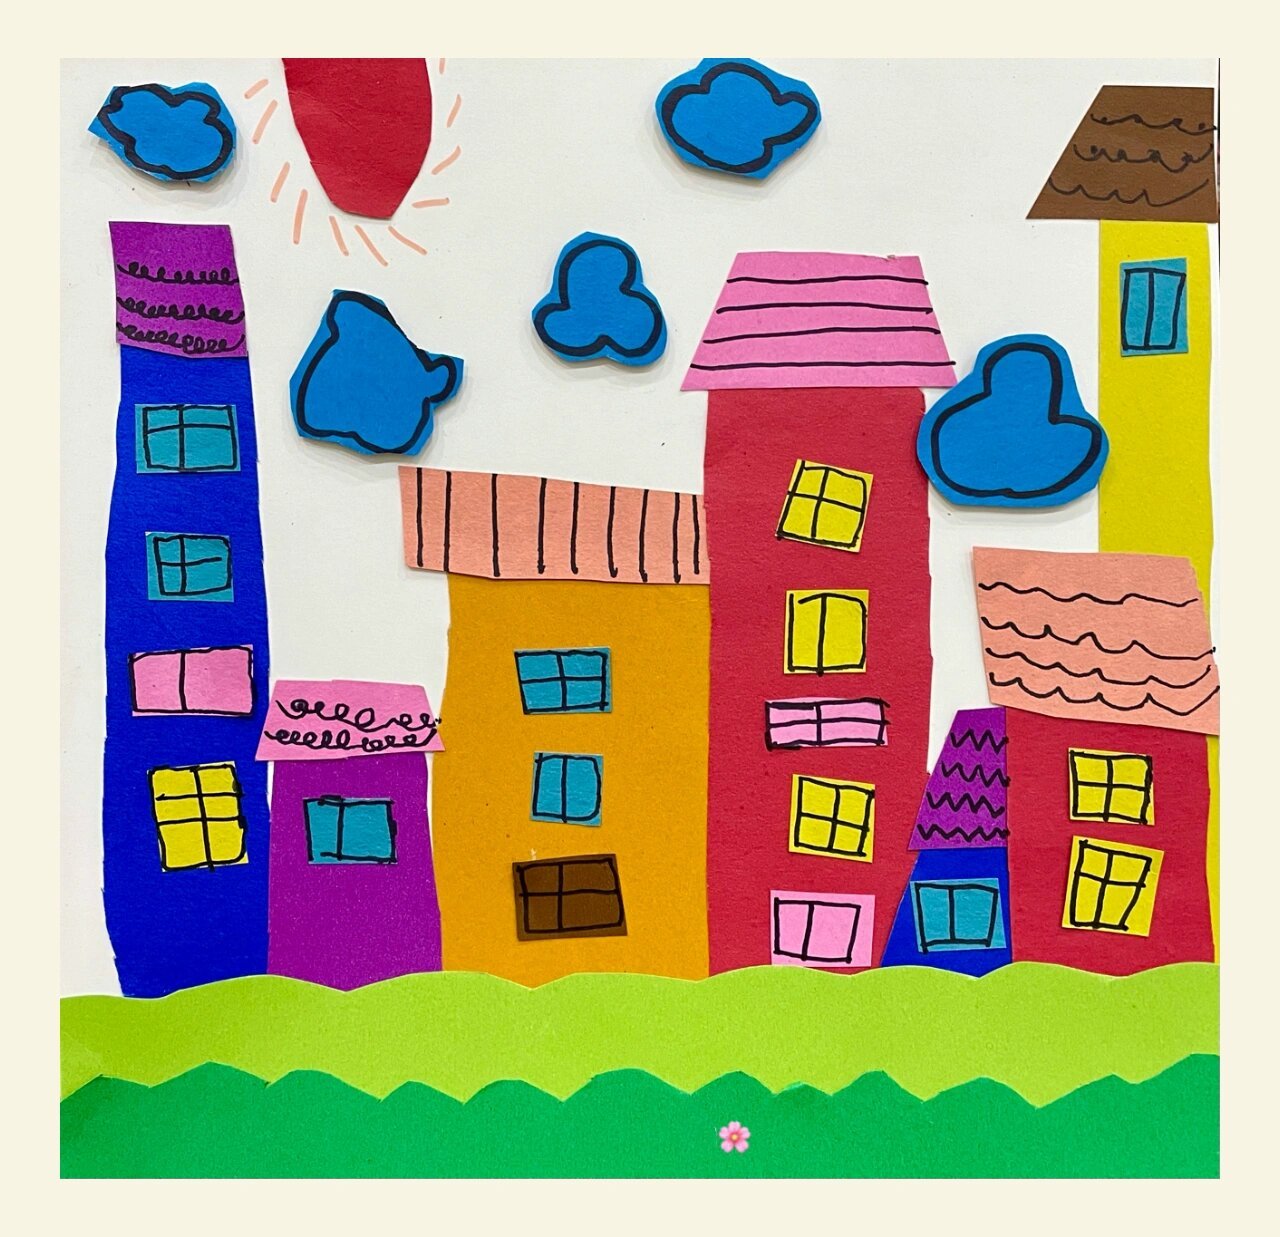 儿童画分享9015剪贴画房子 用彩色卡纸拼接而成的房子 图1是跟小